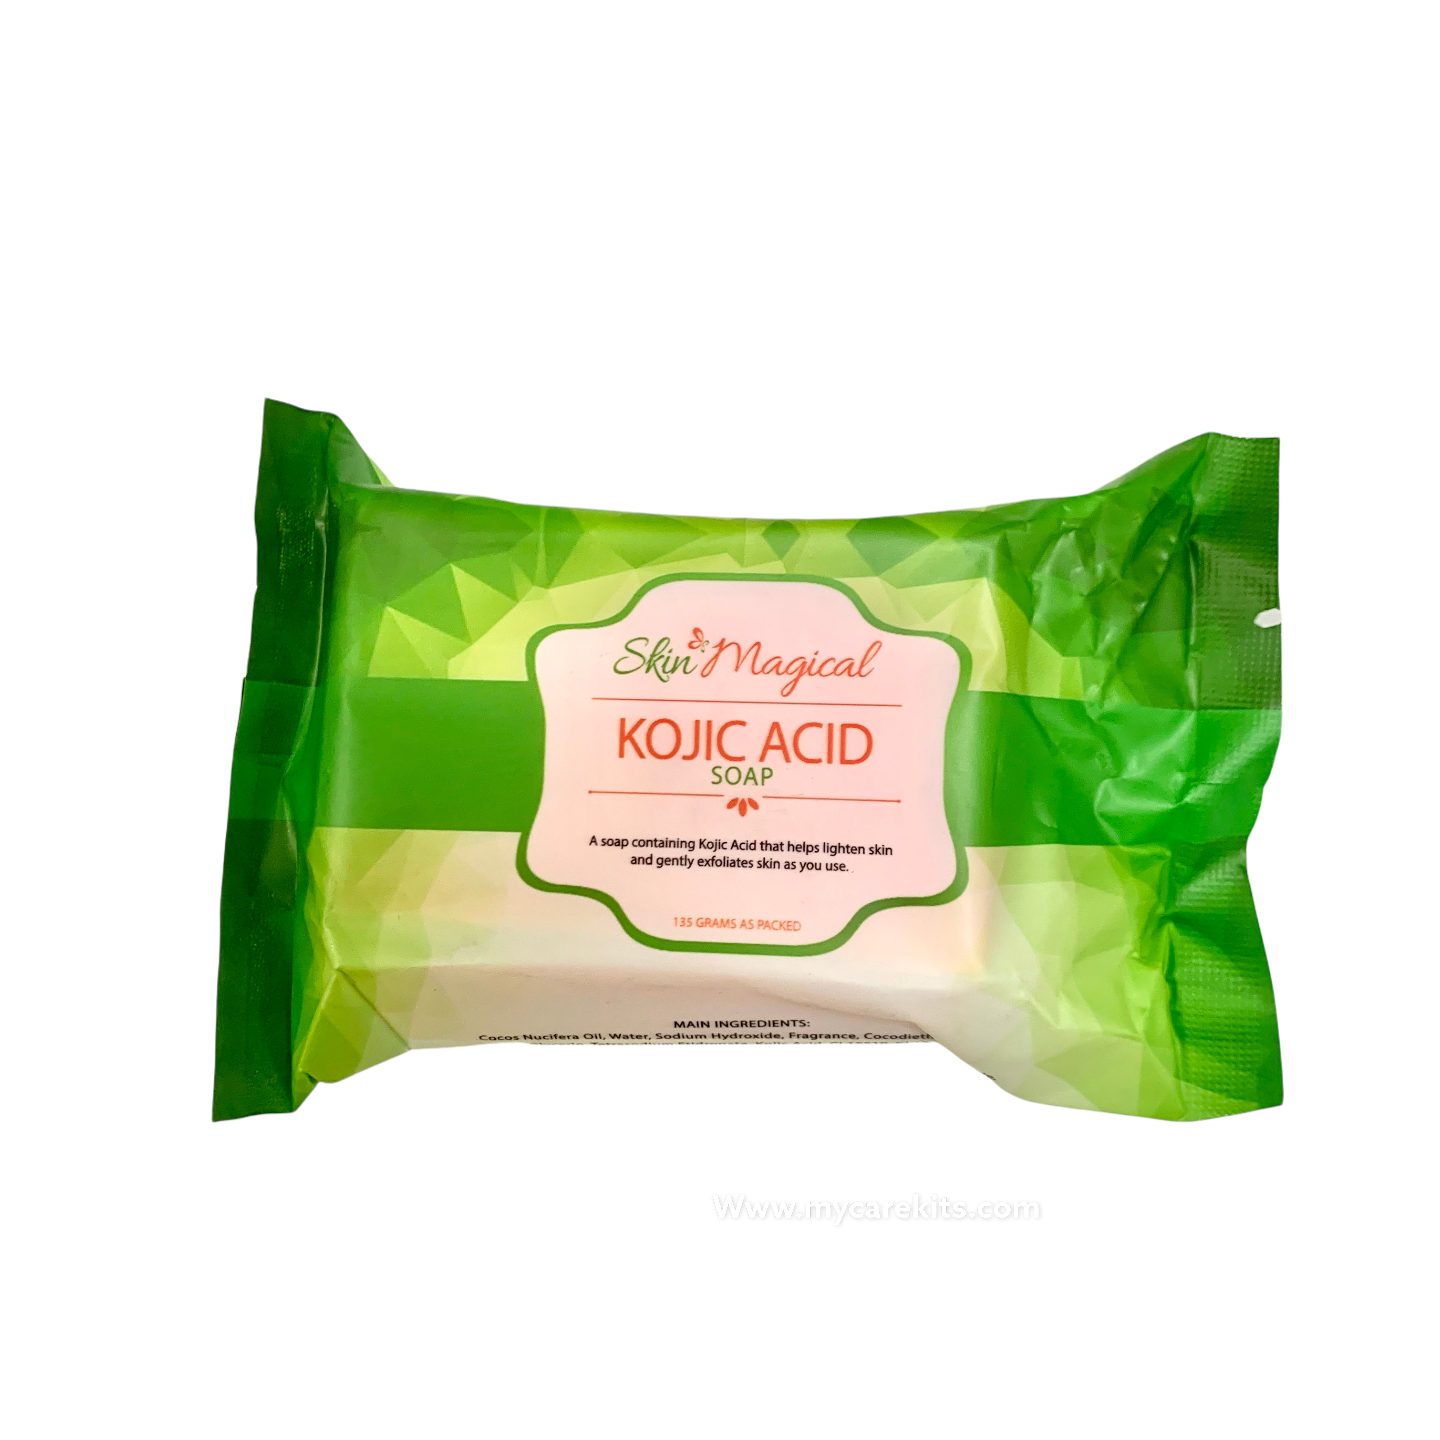 Skin magical 3 Kojic acid soap 135g